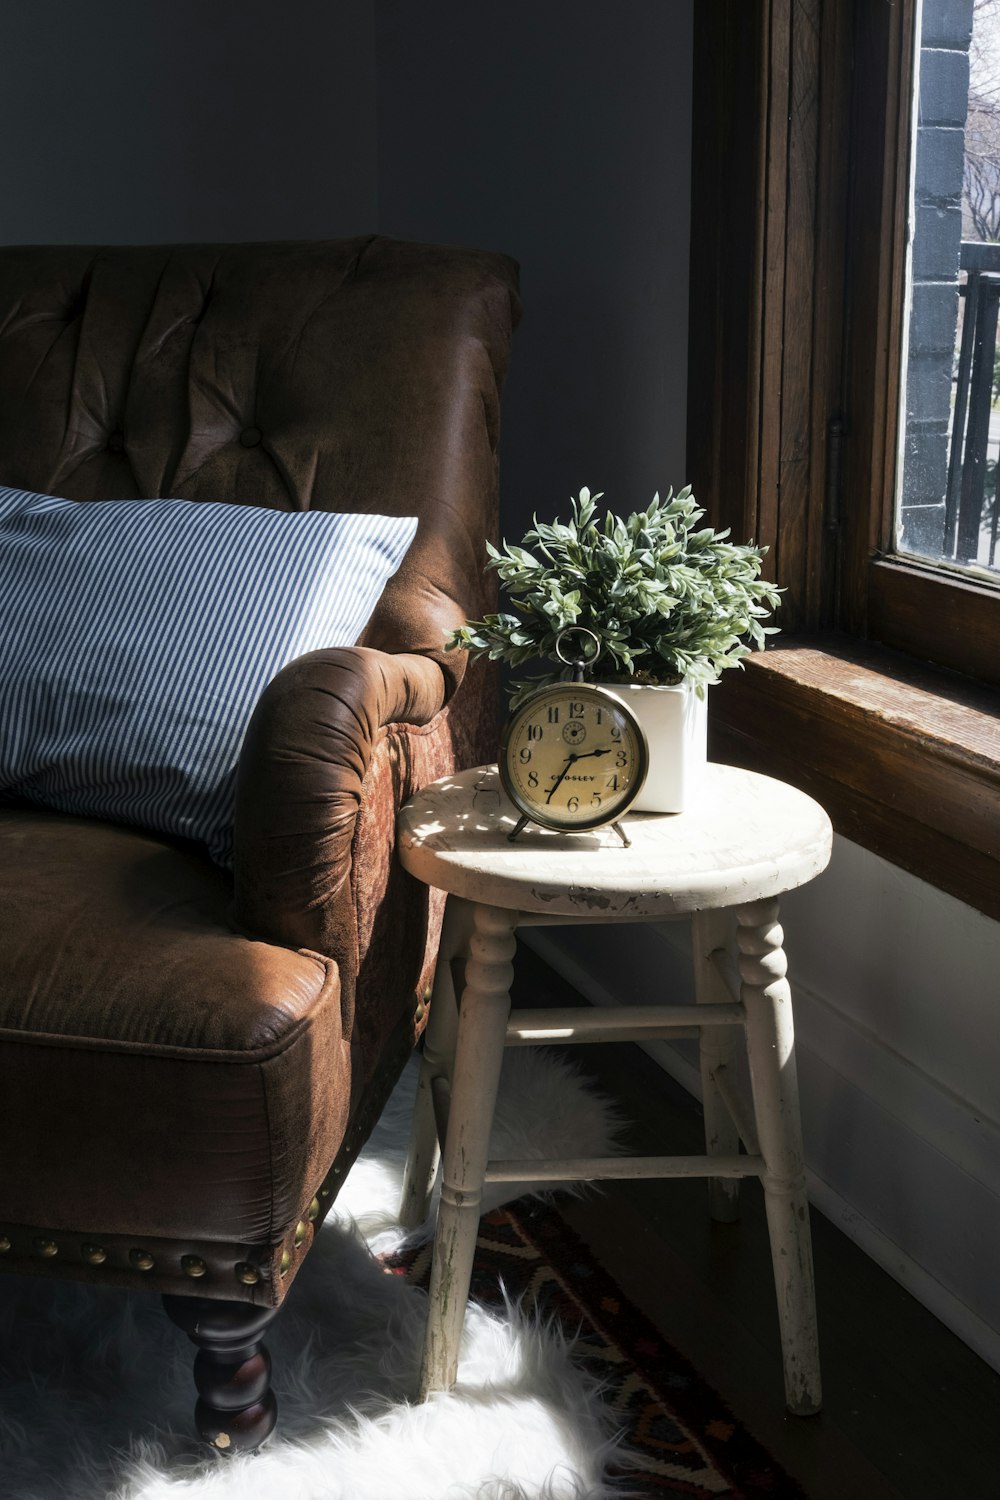 poltrona acolchoada do sofá de couro marrom ao lado da cadeira branca do banco de madeira com relógio analógico de metal cinza redondo